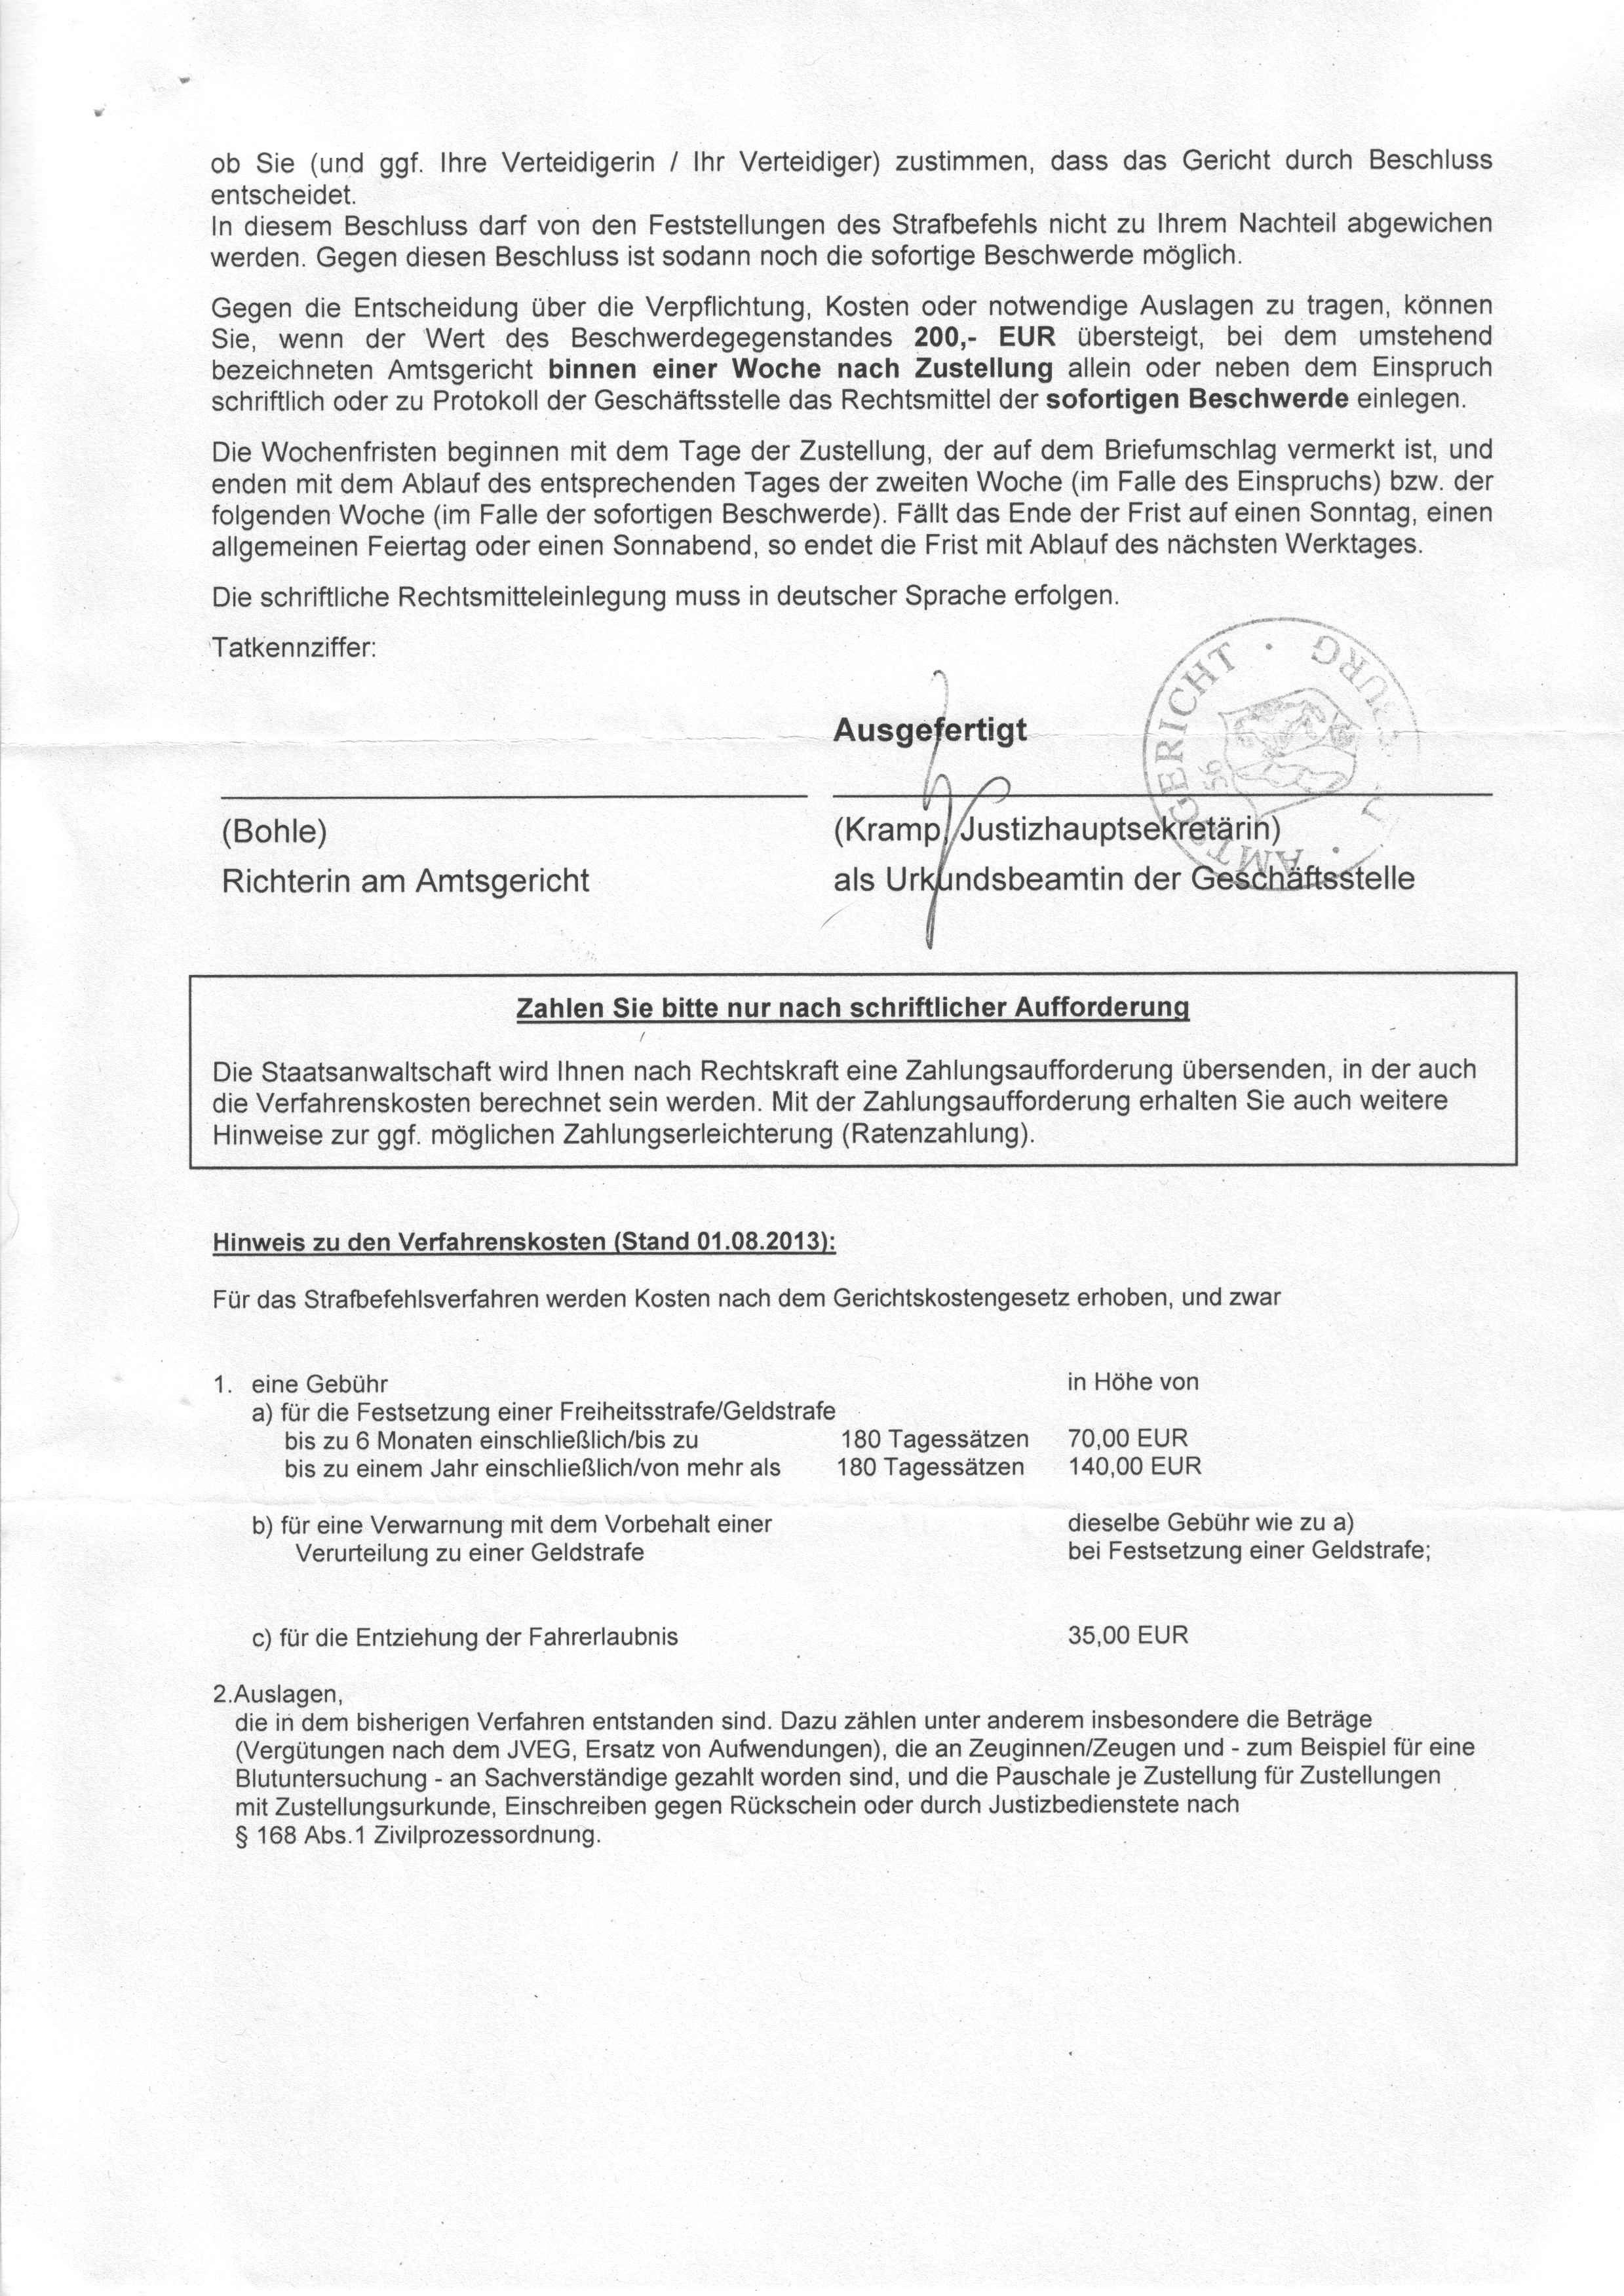 Strafbefehl des Amtsgerichts Duisburg vom 24.09.2015, Richterin Rita Bohle, S. 2